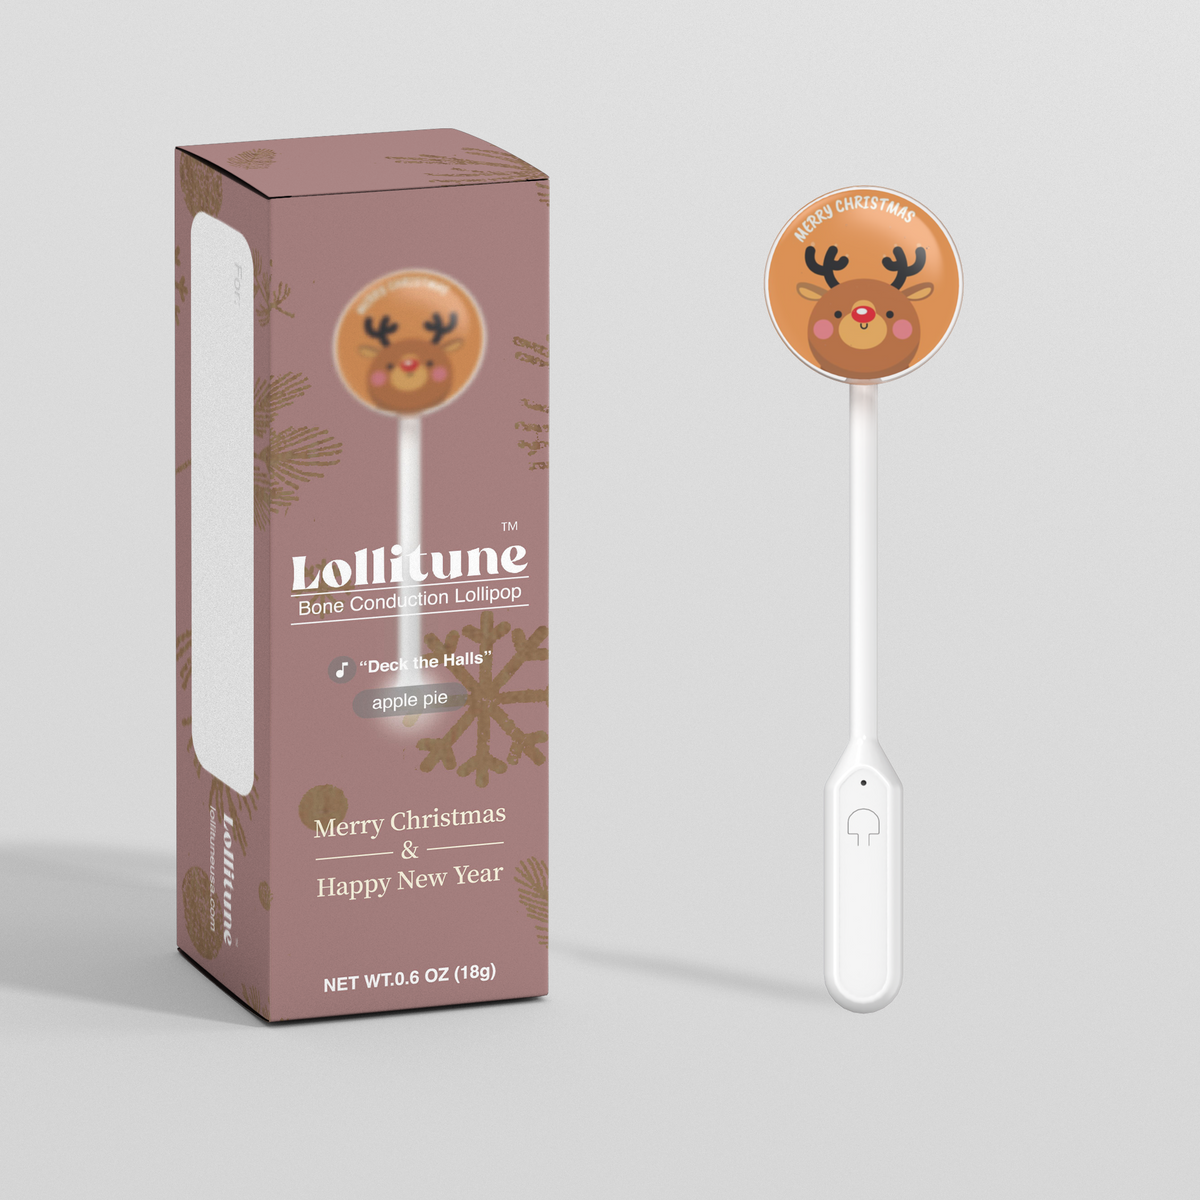 Bone Conduction lollipop Standard Built-in MP3 Apple Pie